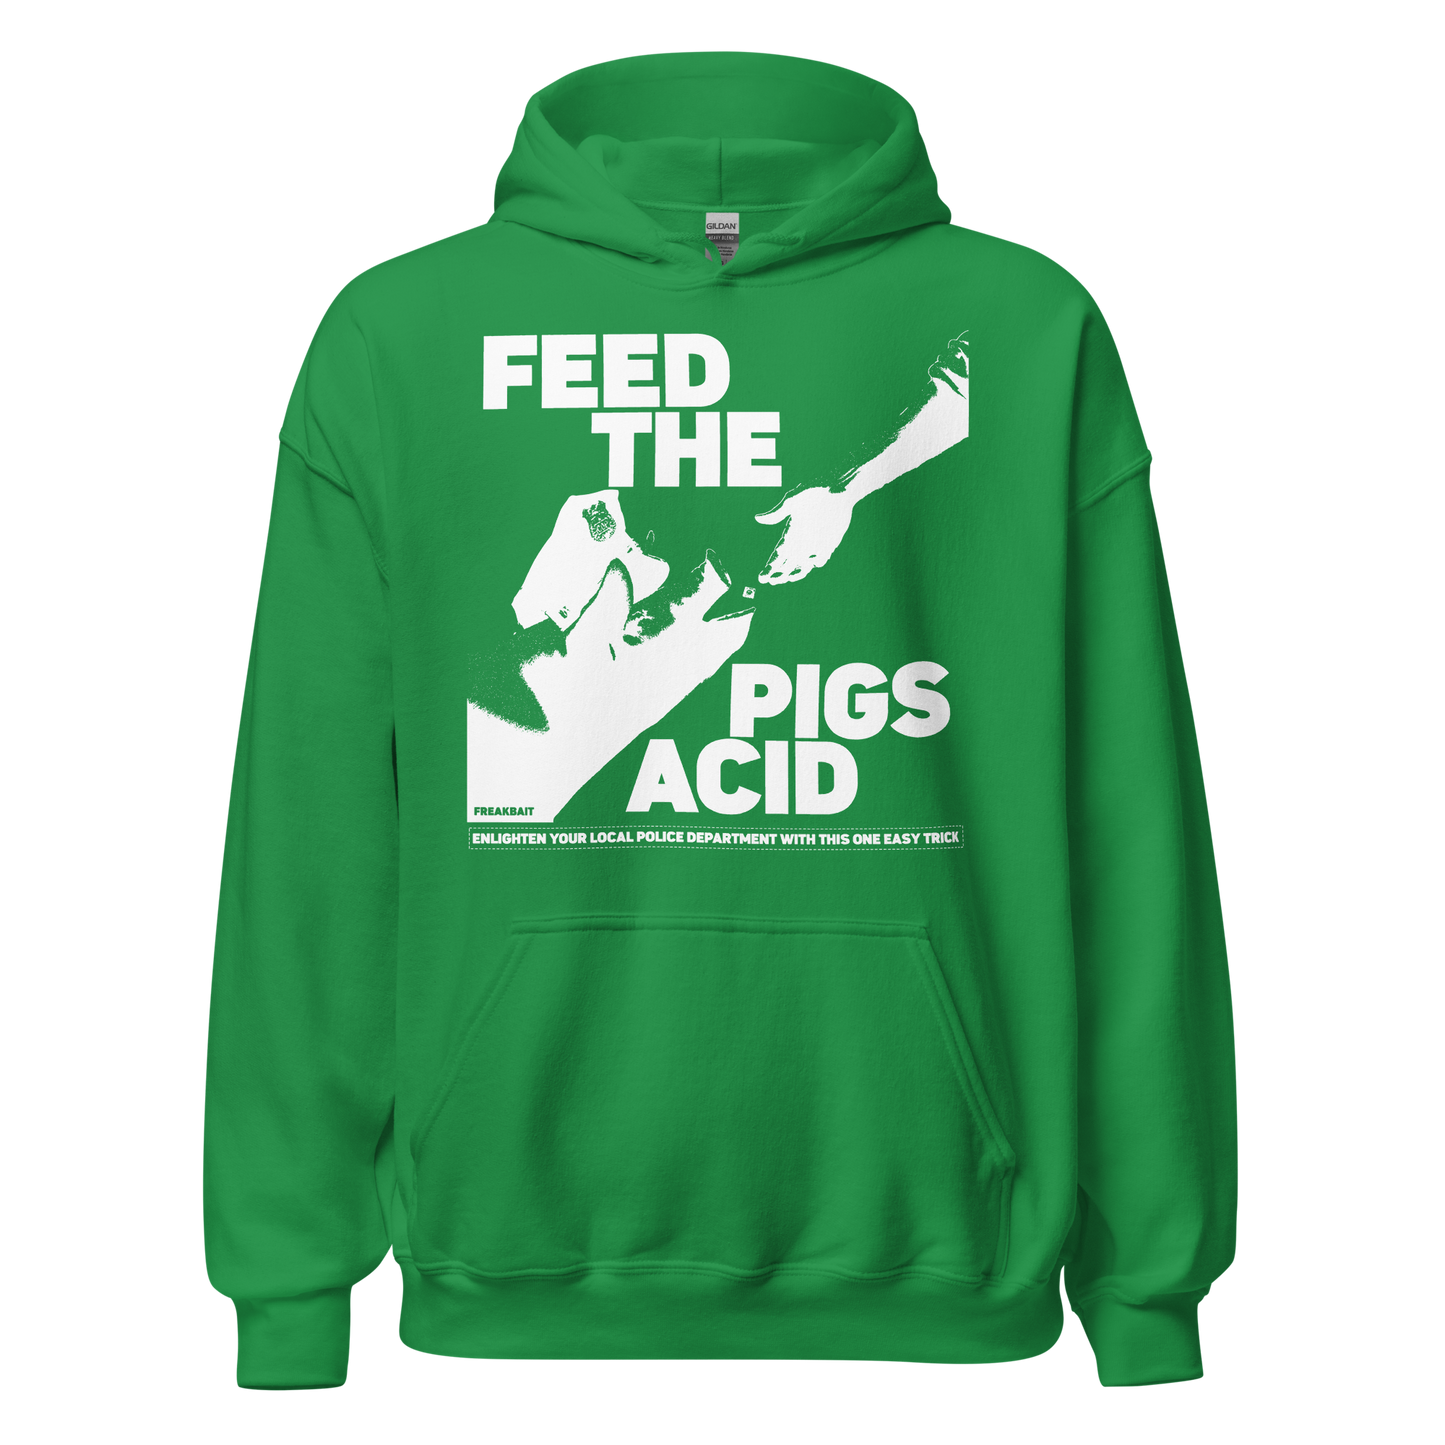 FEED THE PIGS ACID (hoodie)